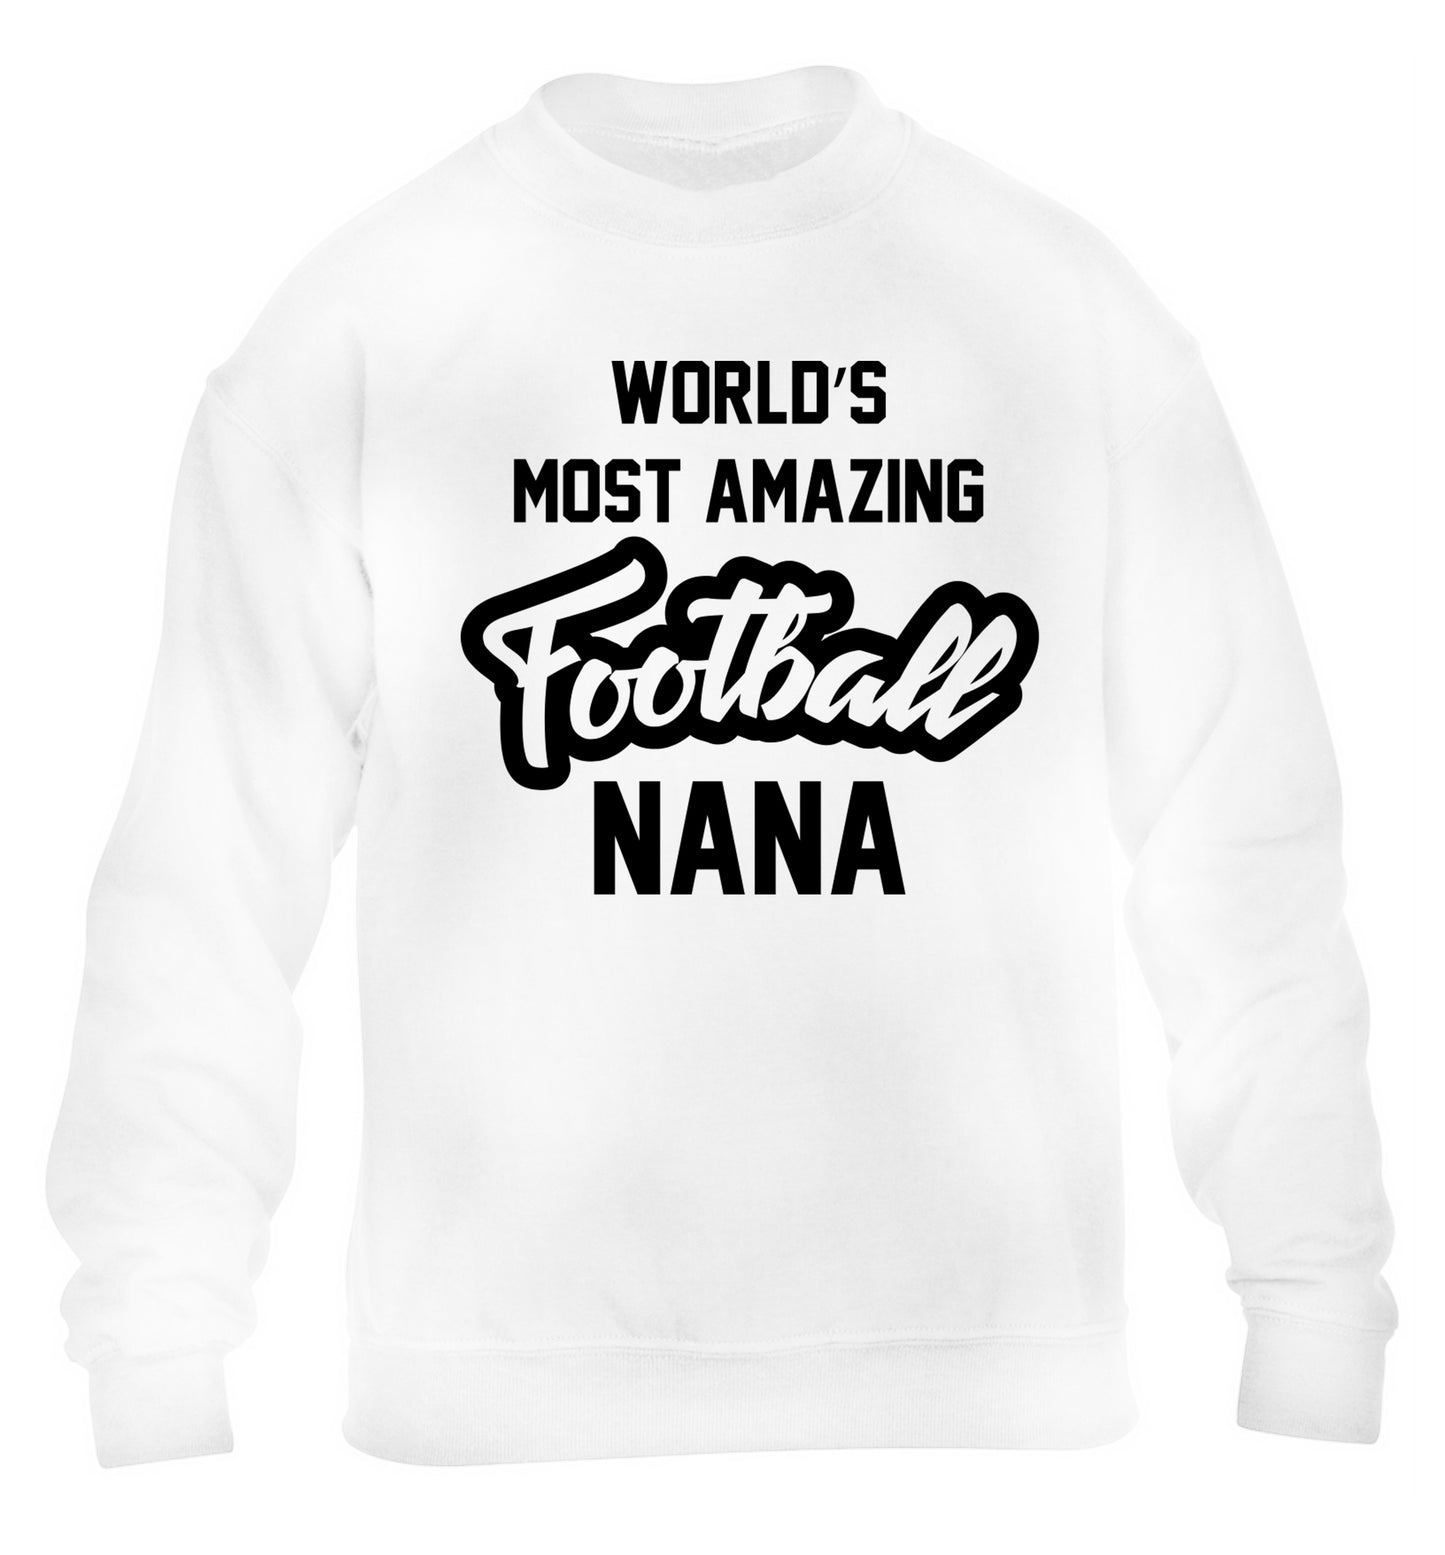 Worlds most amazing football nana children's white sweater 12-14 Years